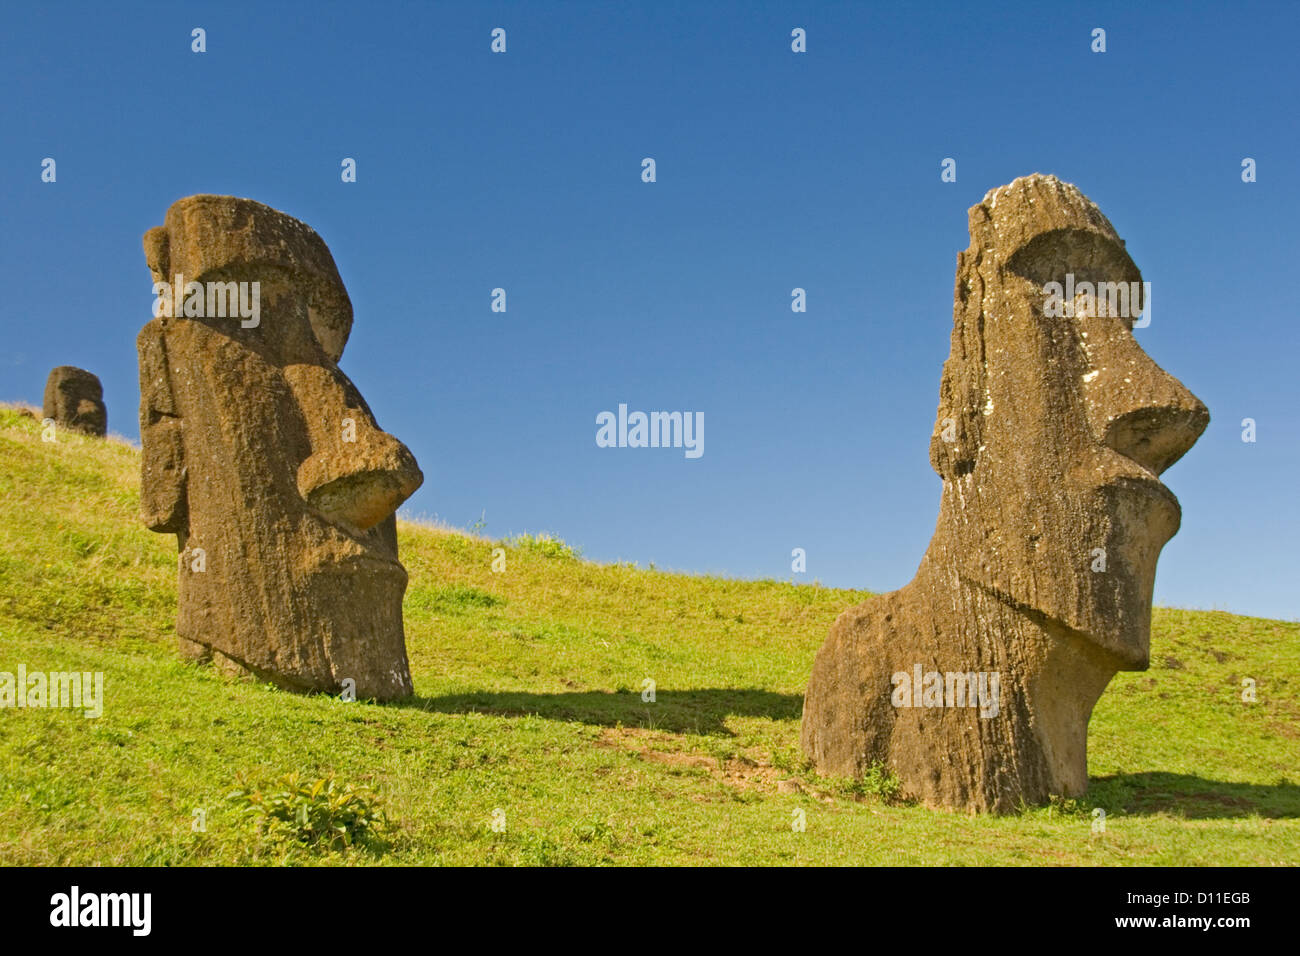 Isola di Pasqua le statue - moai - sui pendii erbosi di Ranu Raraku, la cava dove essi sono stati scolpiti. Foto Stock